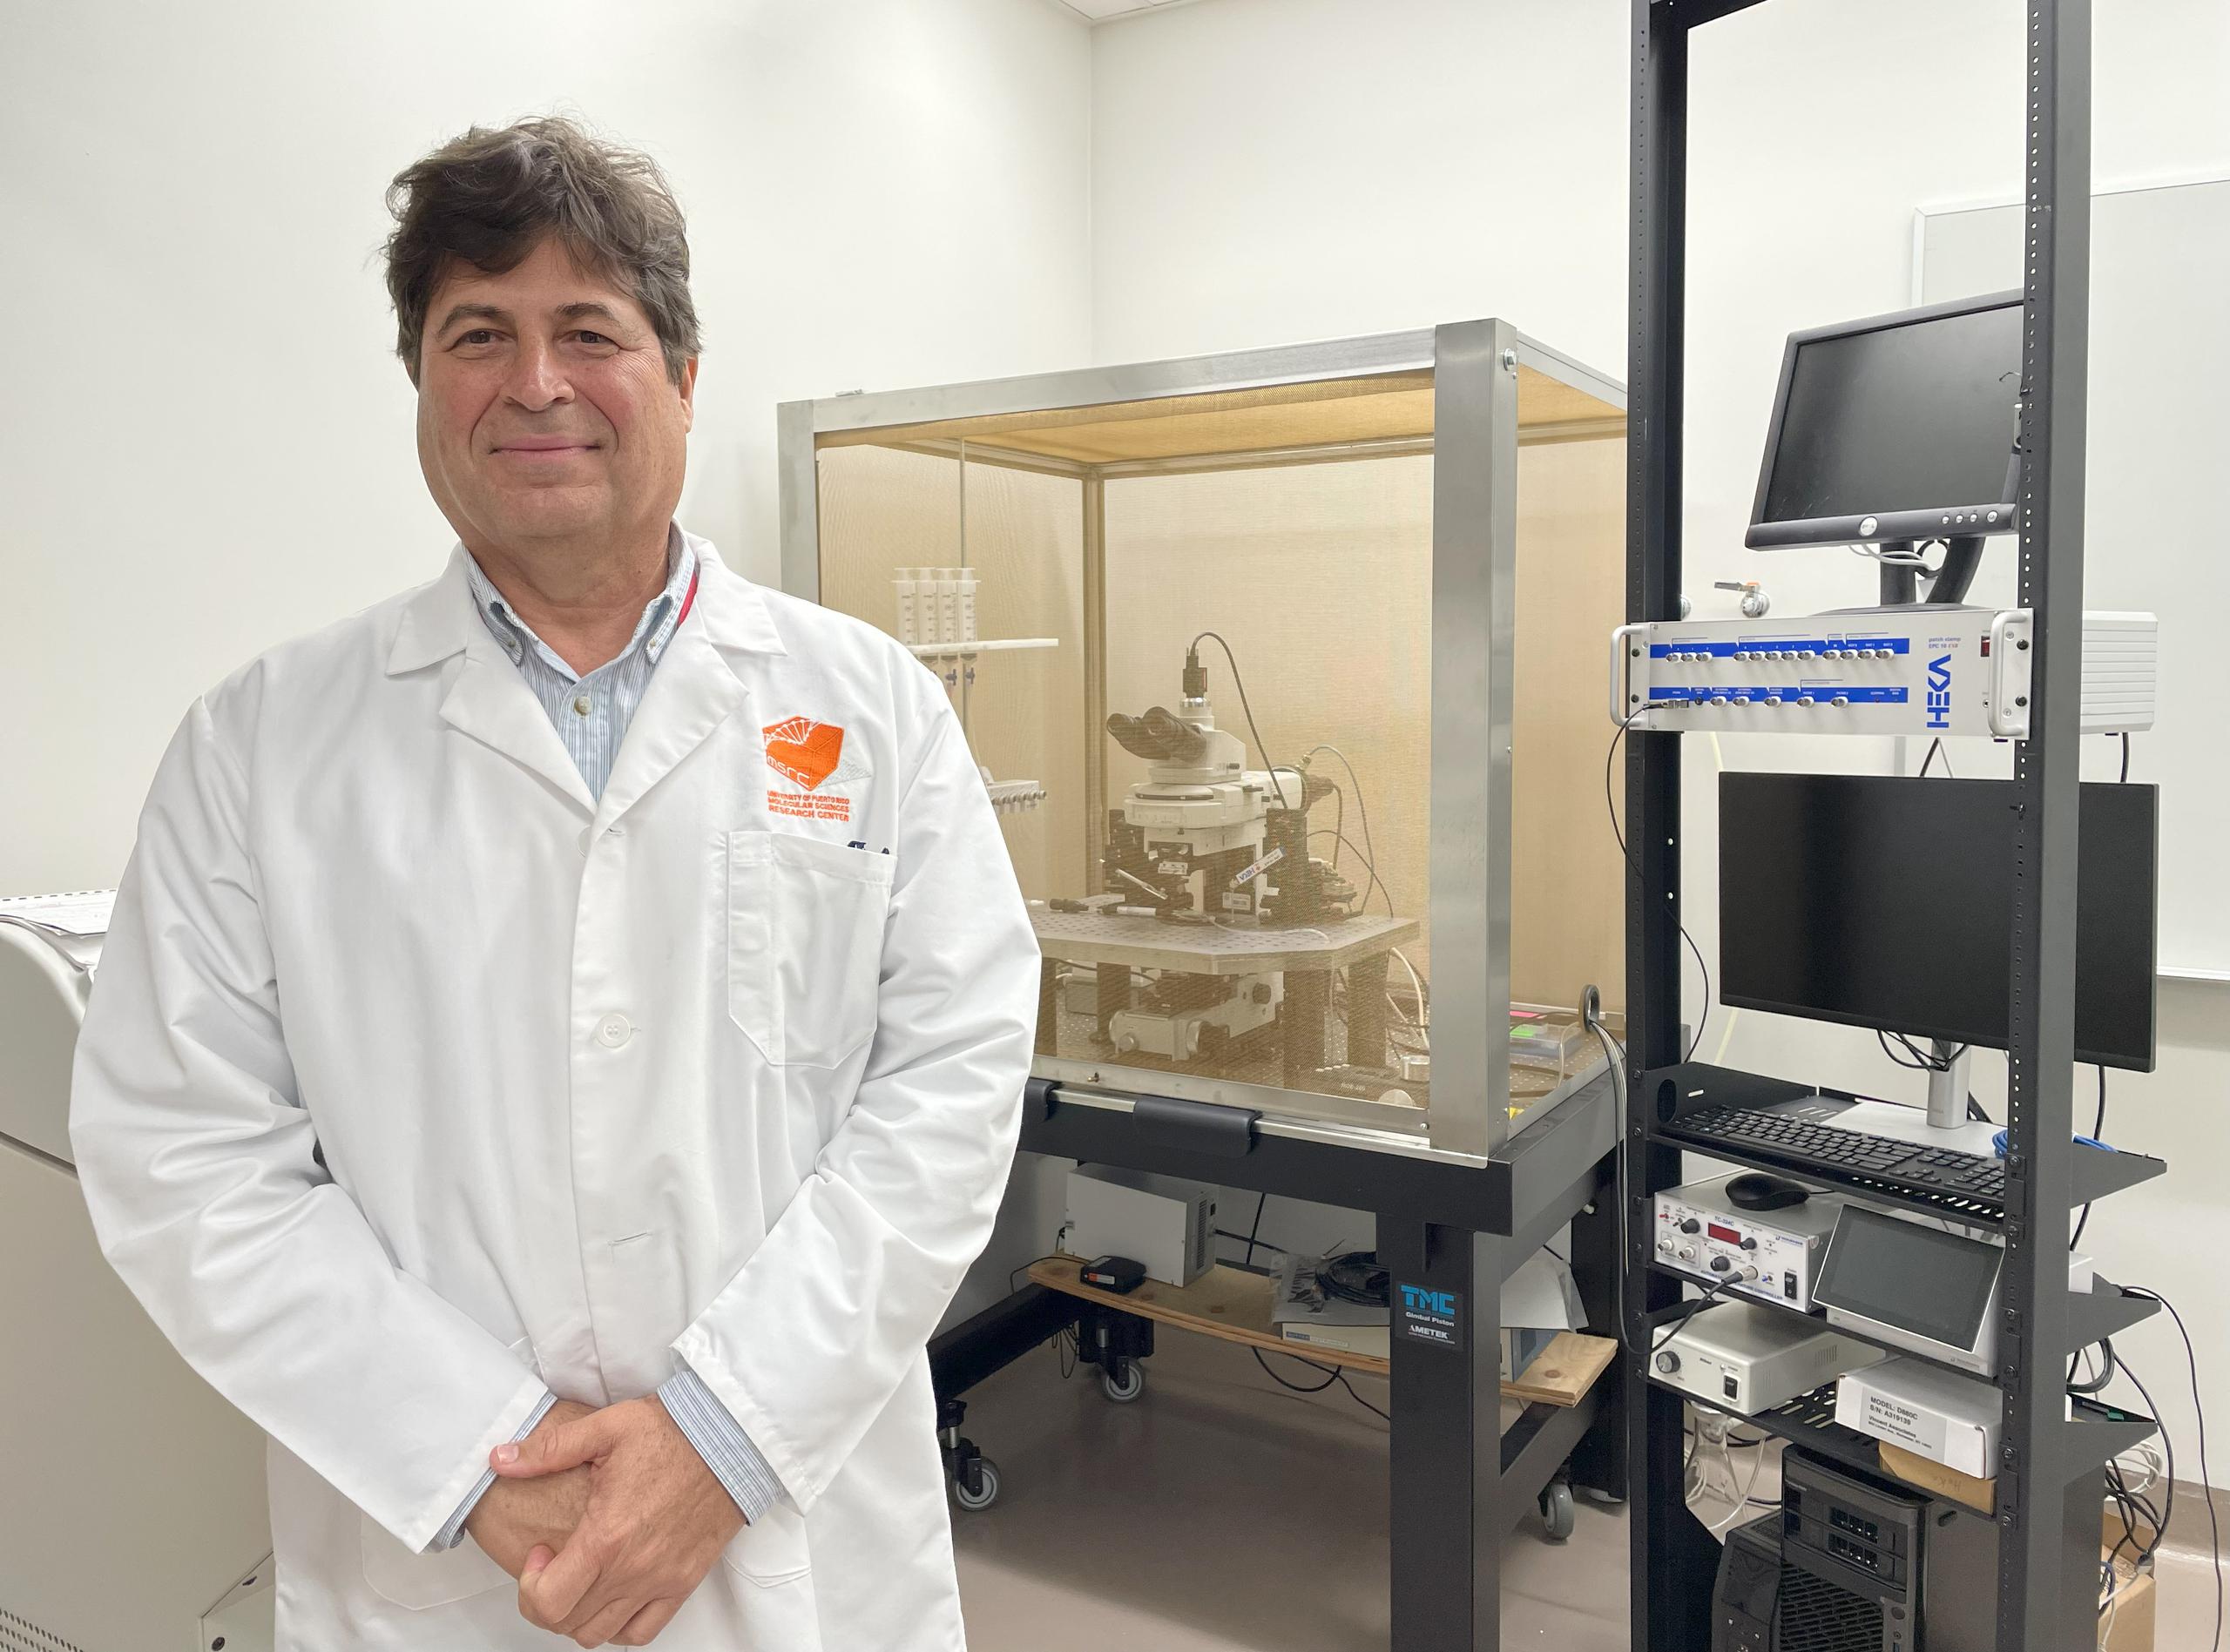 El Dr. Lasalde ofrece cátedra en los departamentos de Biología y Química en Ciencias Naturales de la UPR-Río Piedras, y es profesor adjunto del Instituto de Neurobiología del Recinto de Ciencias Médicas.